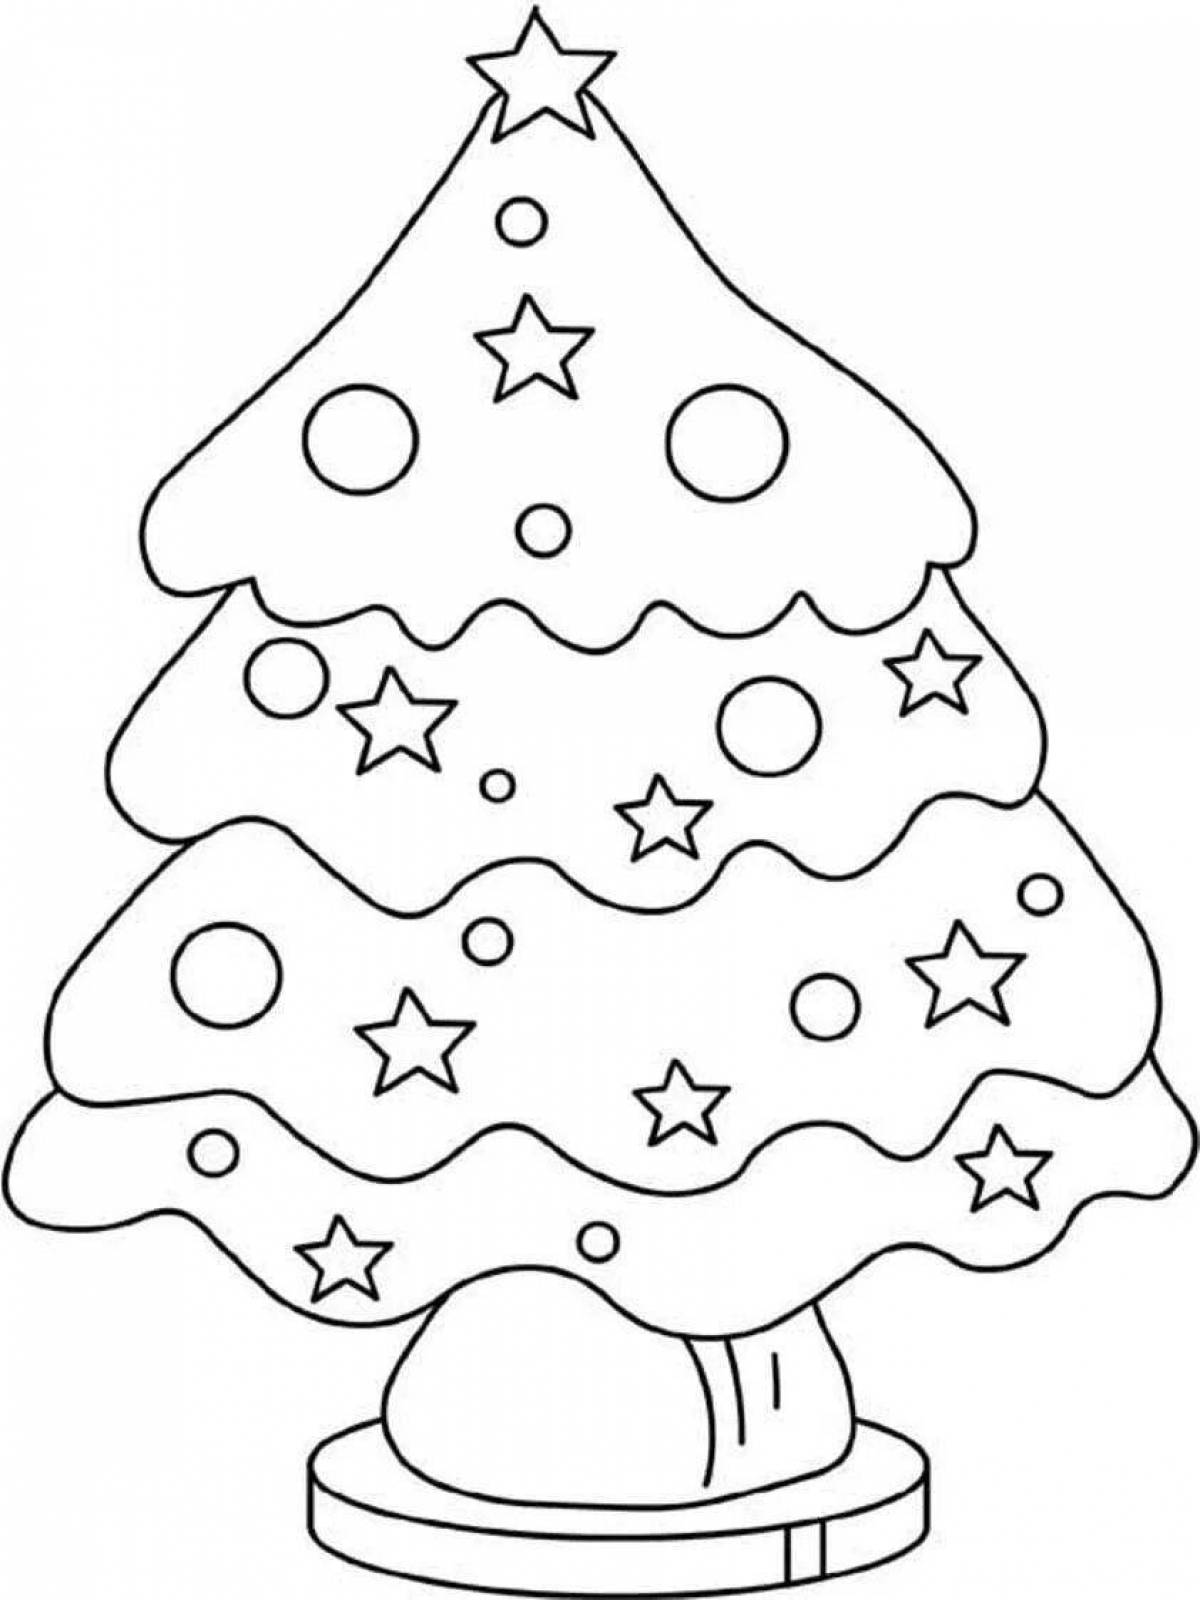 Игривая страница раскраски рождественской елки для детей 3-4 лет